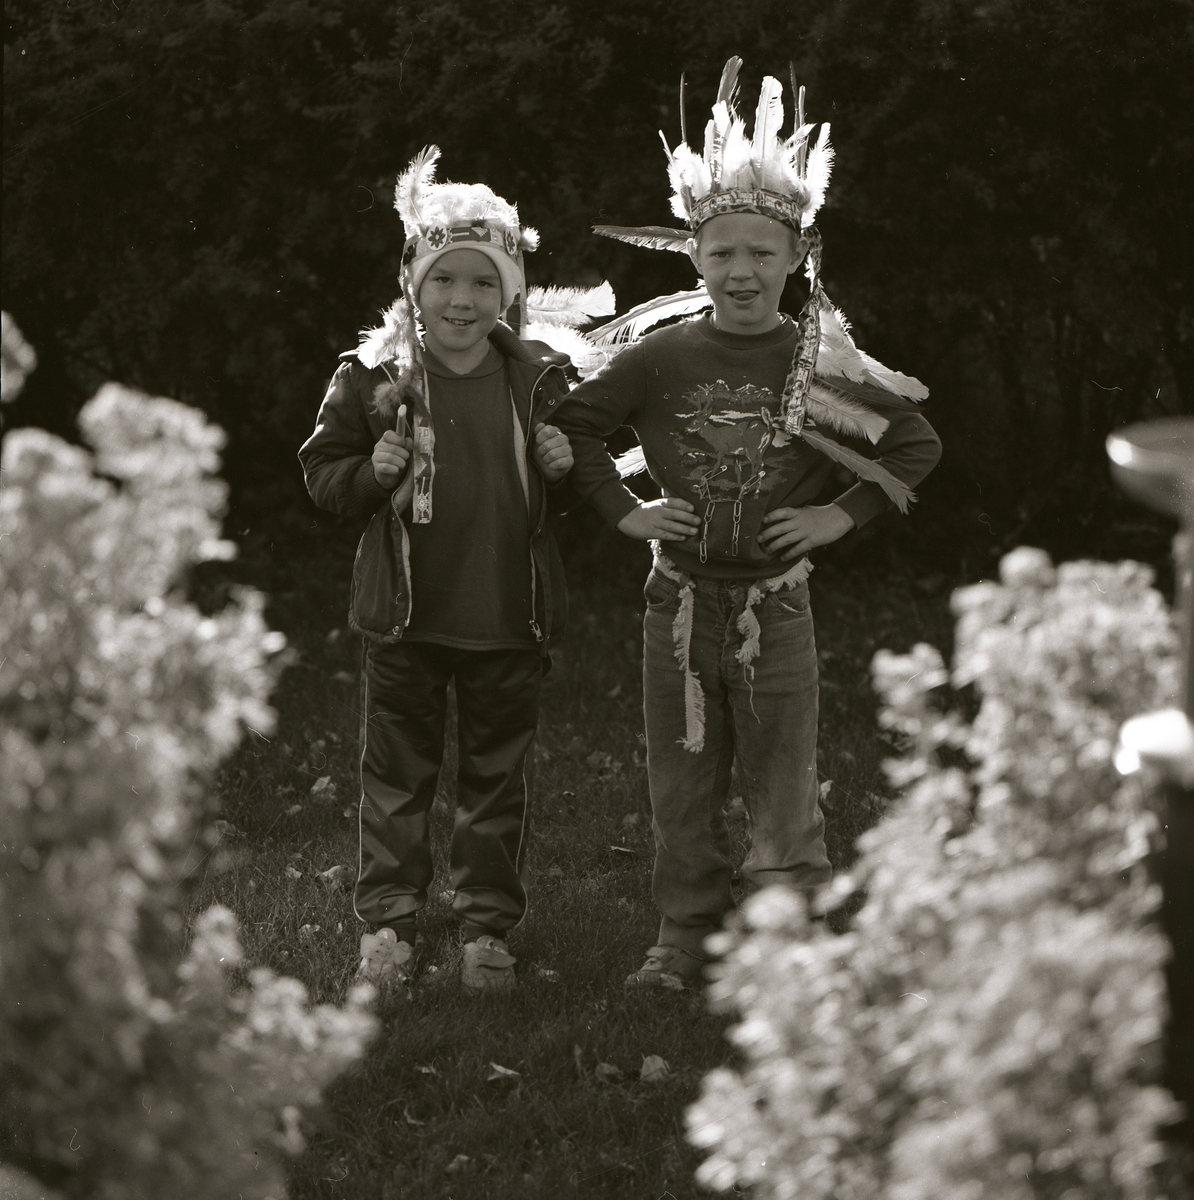 Två pojkar utklädda till indianer med fjädrar på huvudet, Forsby den 13 oktober 1985.